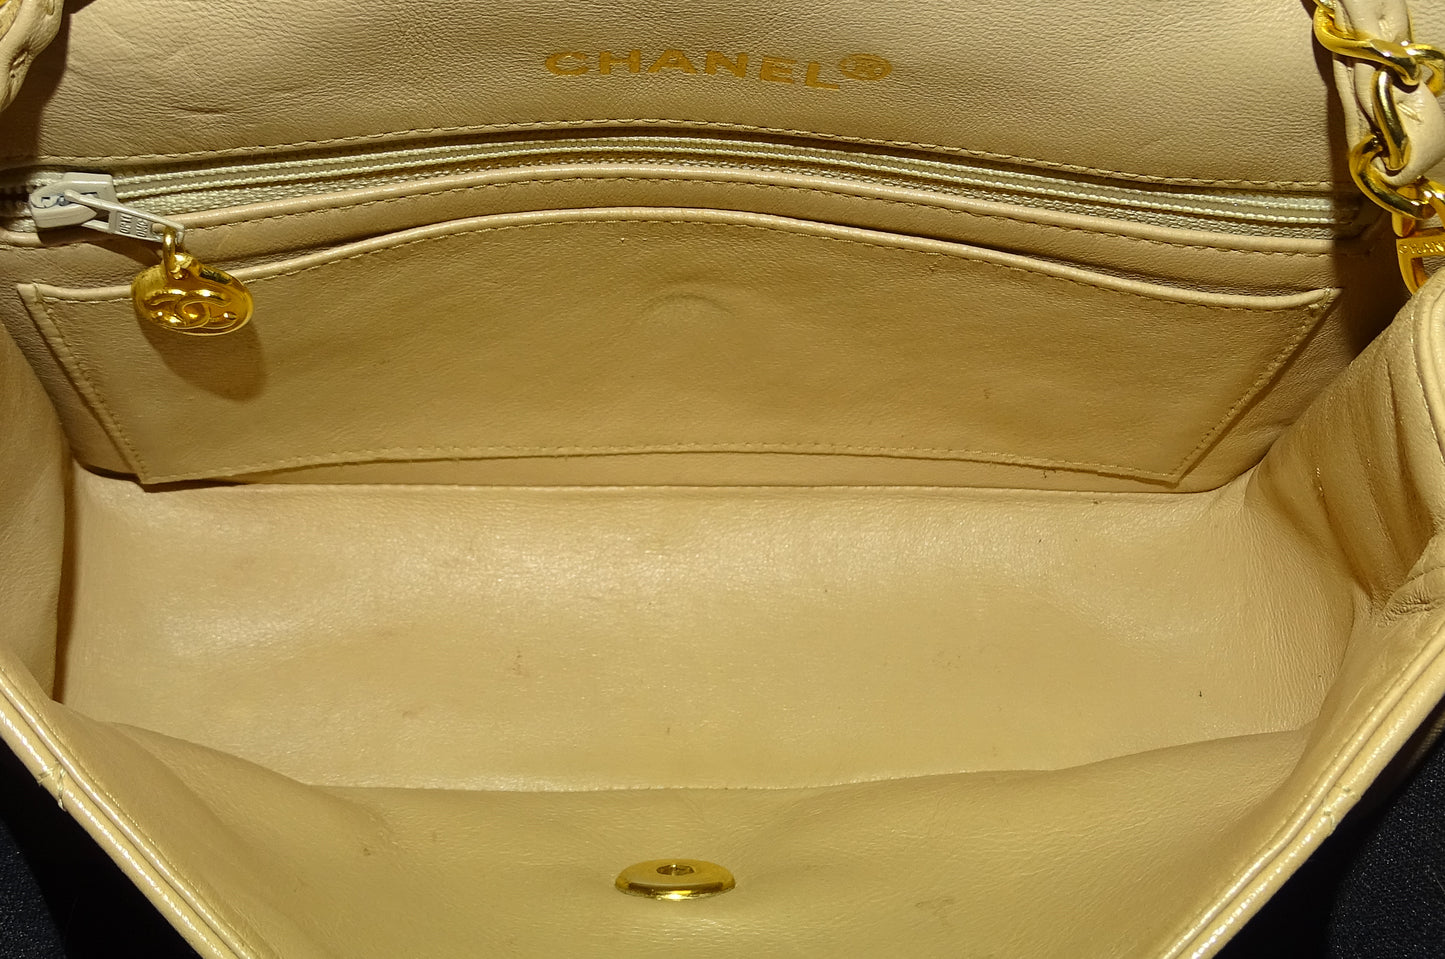 Chanel Beige Lambskin Diana Flap Bag 1989/91